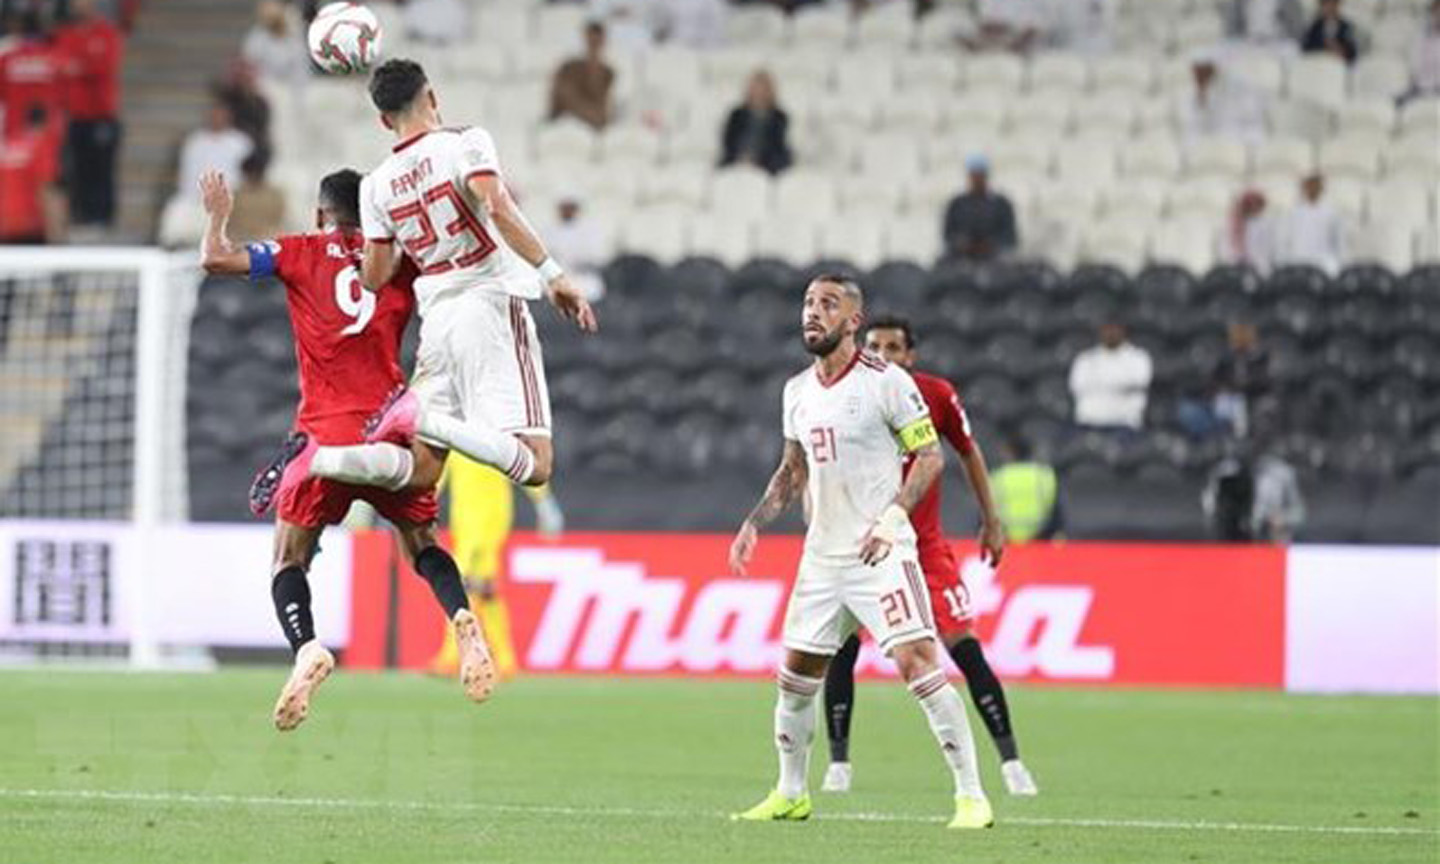 Trong trận đấu ra quân tại bảng D vòng bảng AFC Asian Cup 2019 diễn ra trên sân Mohammed Bin Zayed Stadium, đội tuyển Iran (áo trắng) đã giành chiến thắng với tỷ số 5-0 trước đội tuyển Yemen. (Ảnh: Hoàng Linh/TTXVN)